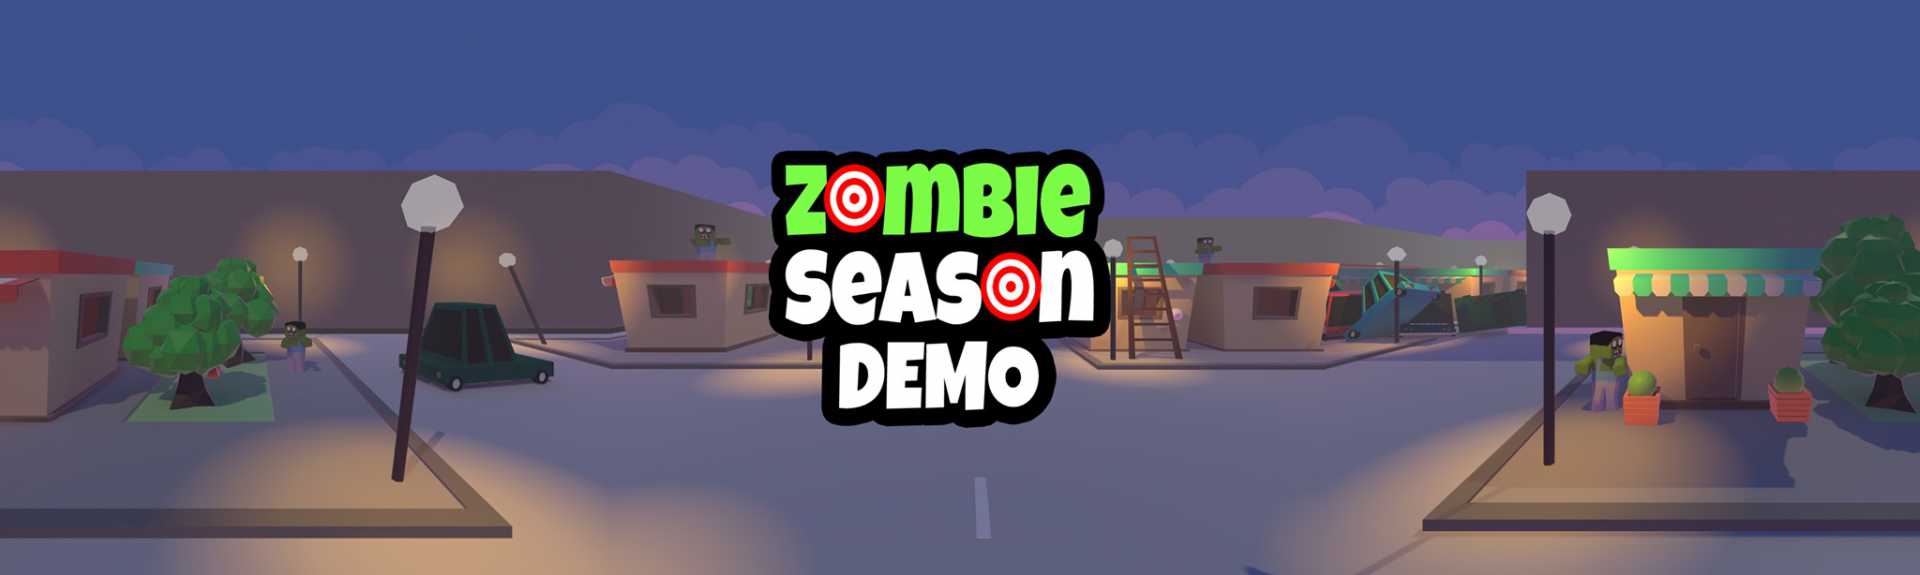 Zombie Season Demo